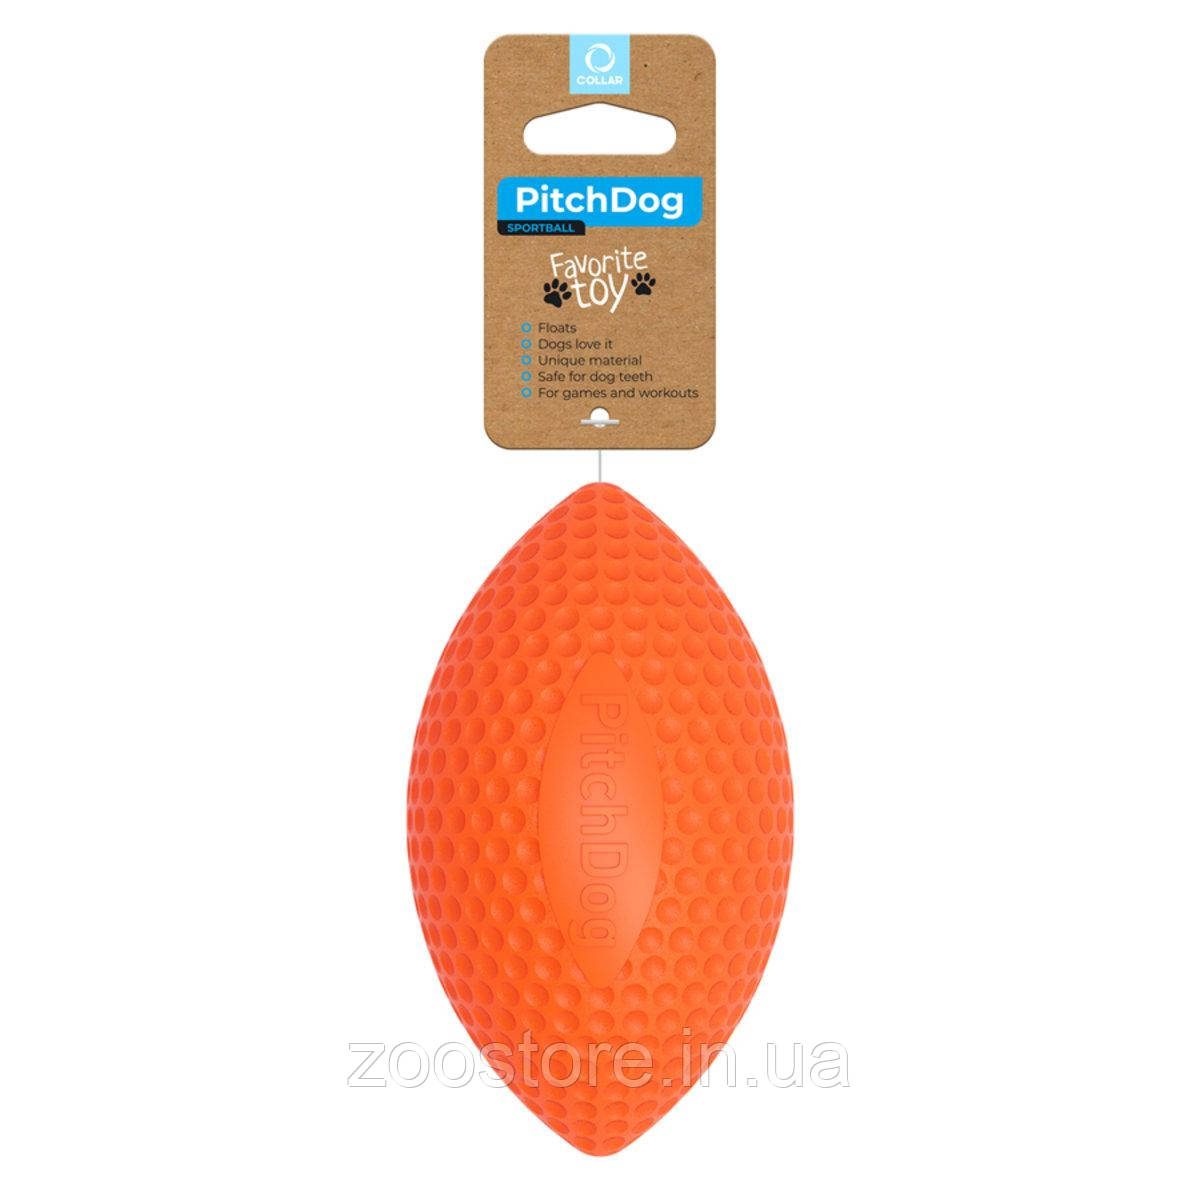 Ігрушка для собак PitchDog - М'яч РЕГБІ для апортировки, діаметр 9 см ПОМАРАНЧЕВИЙ Collar